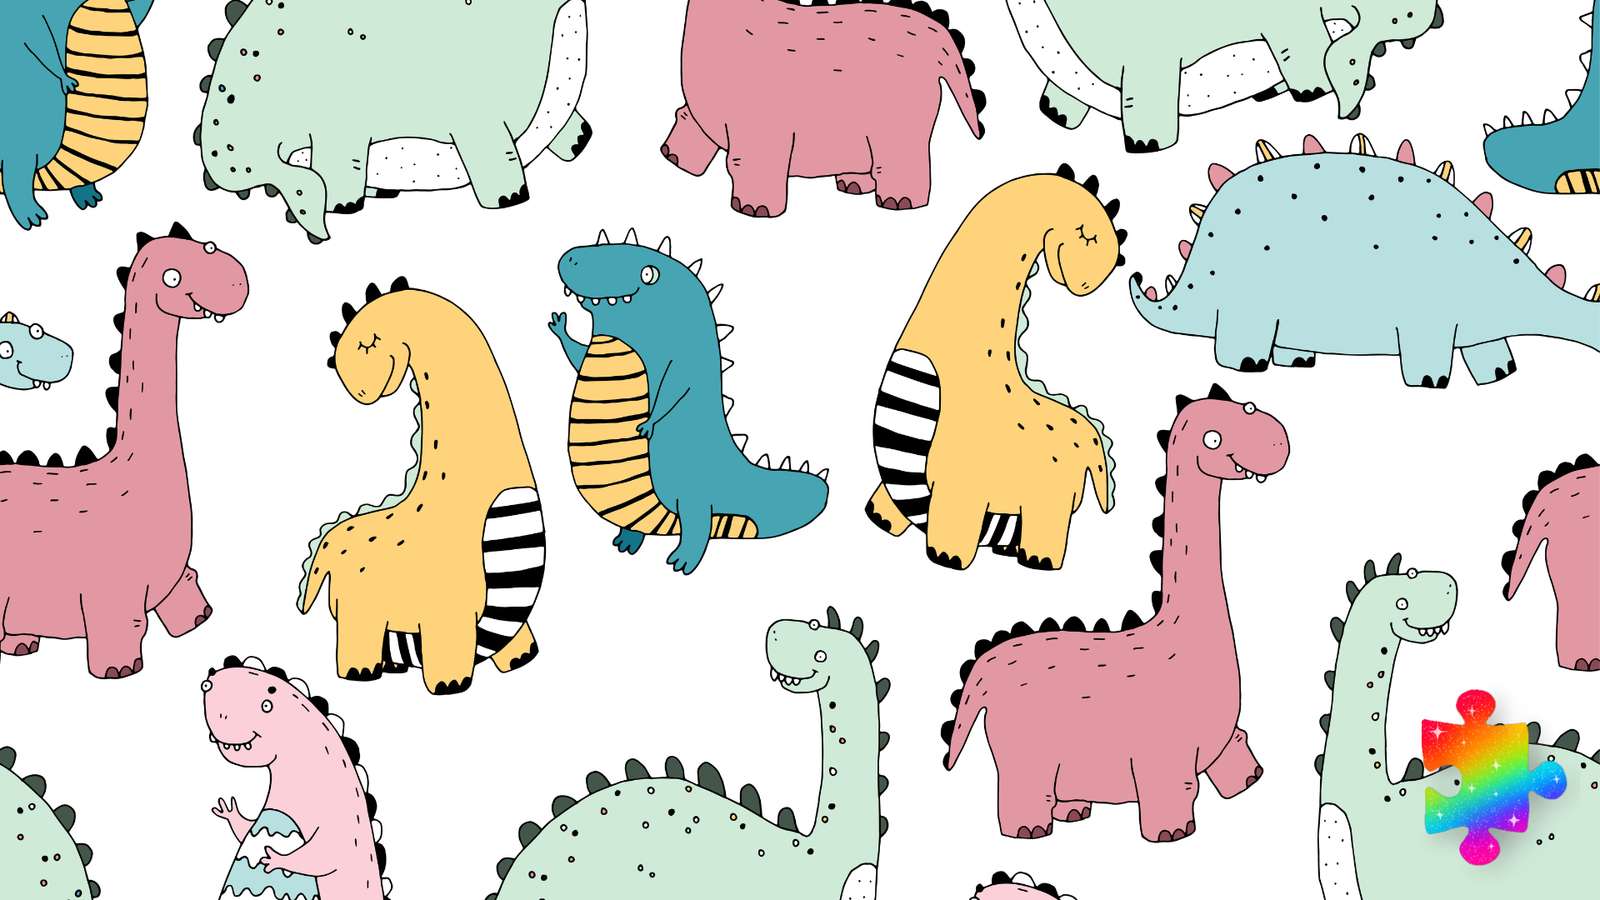 Dinosauri colorati puzzle online